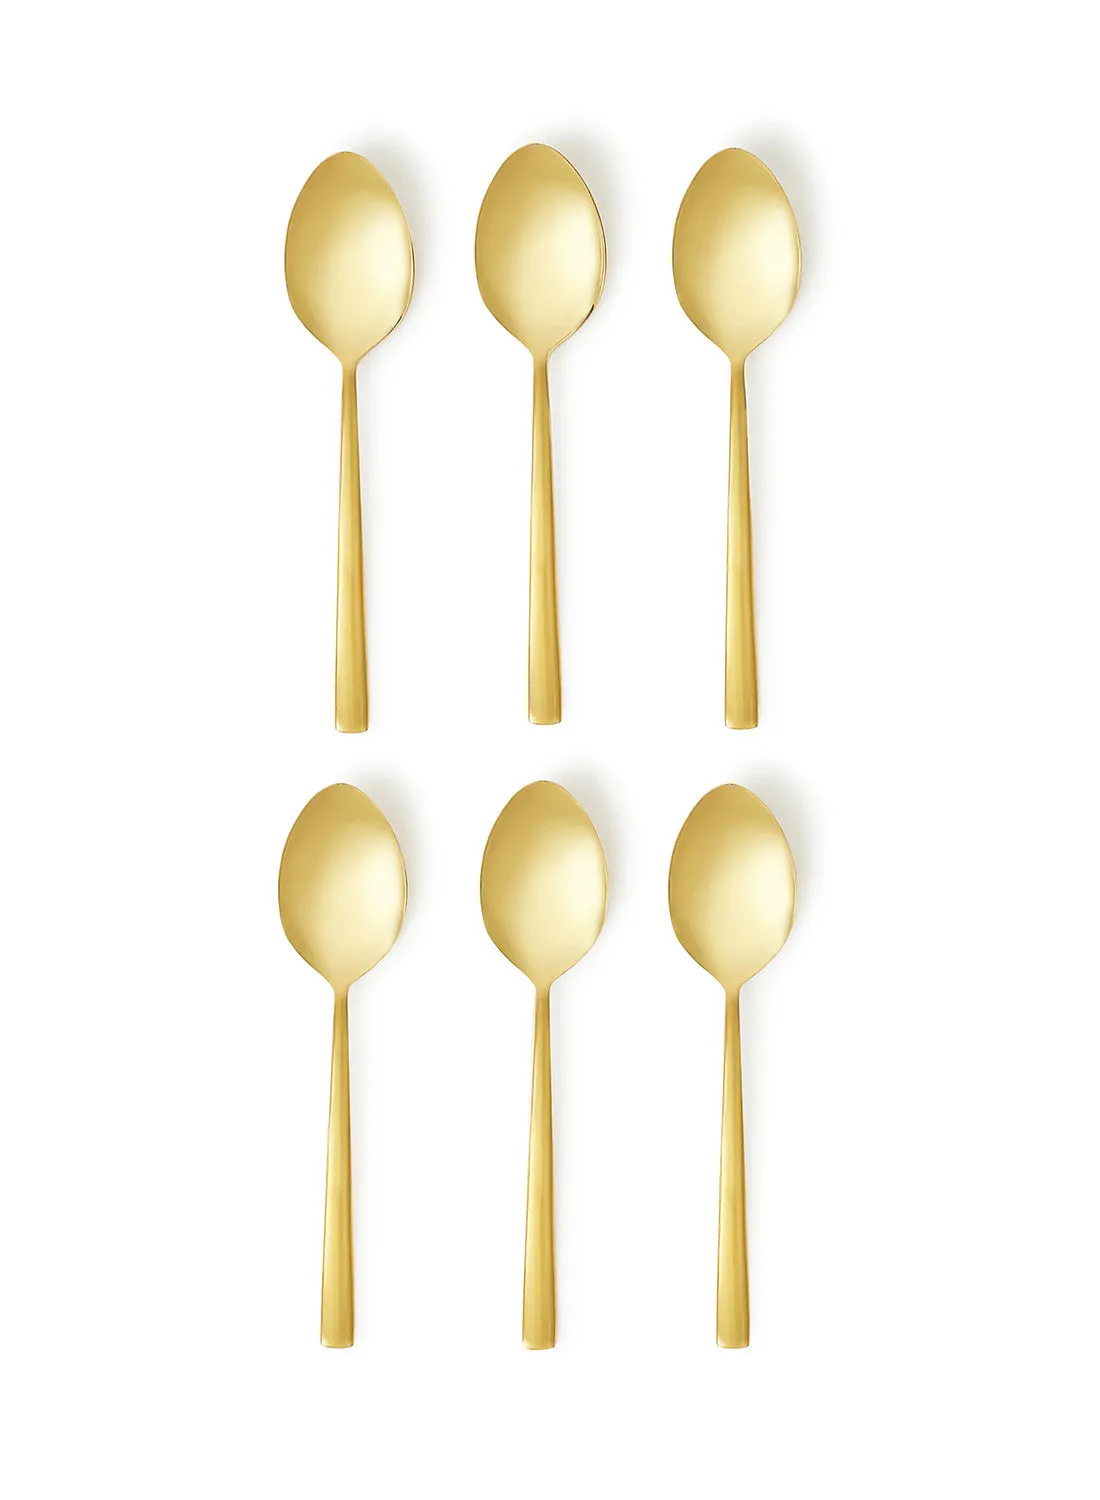 noon east 6 Piece Teaspoons Set - Made Of Stainless Steel - Silverware Flatware - Spoons - Spoon Set - Tea Spoons - Serves 6 - Design Gold Spade